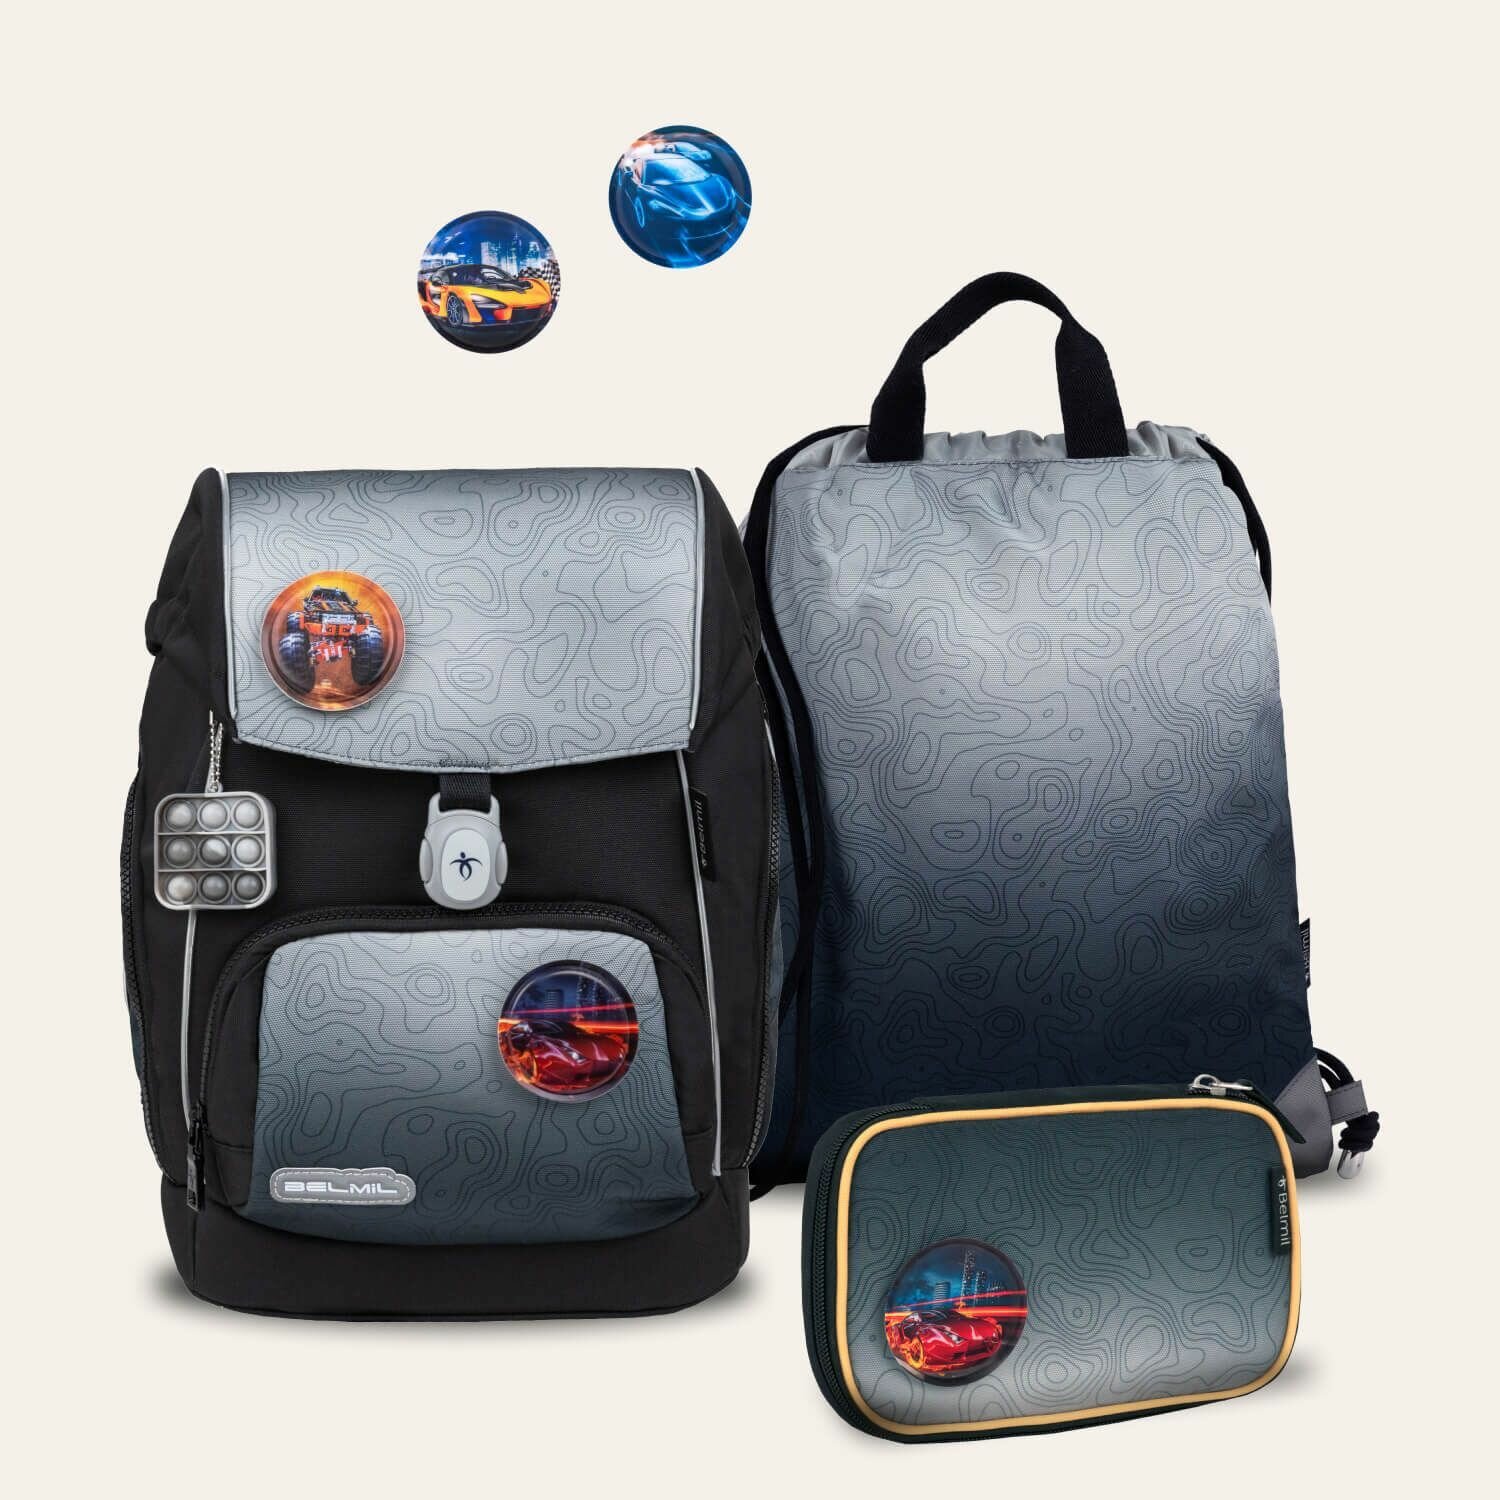 Школьный рюкзак с наполнением Belmil Premium